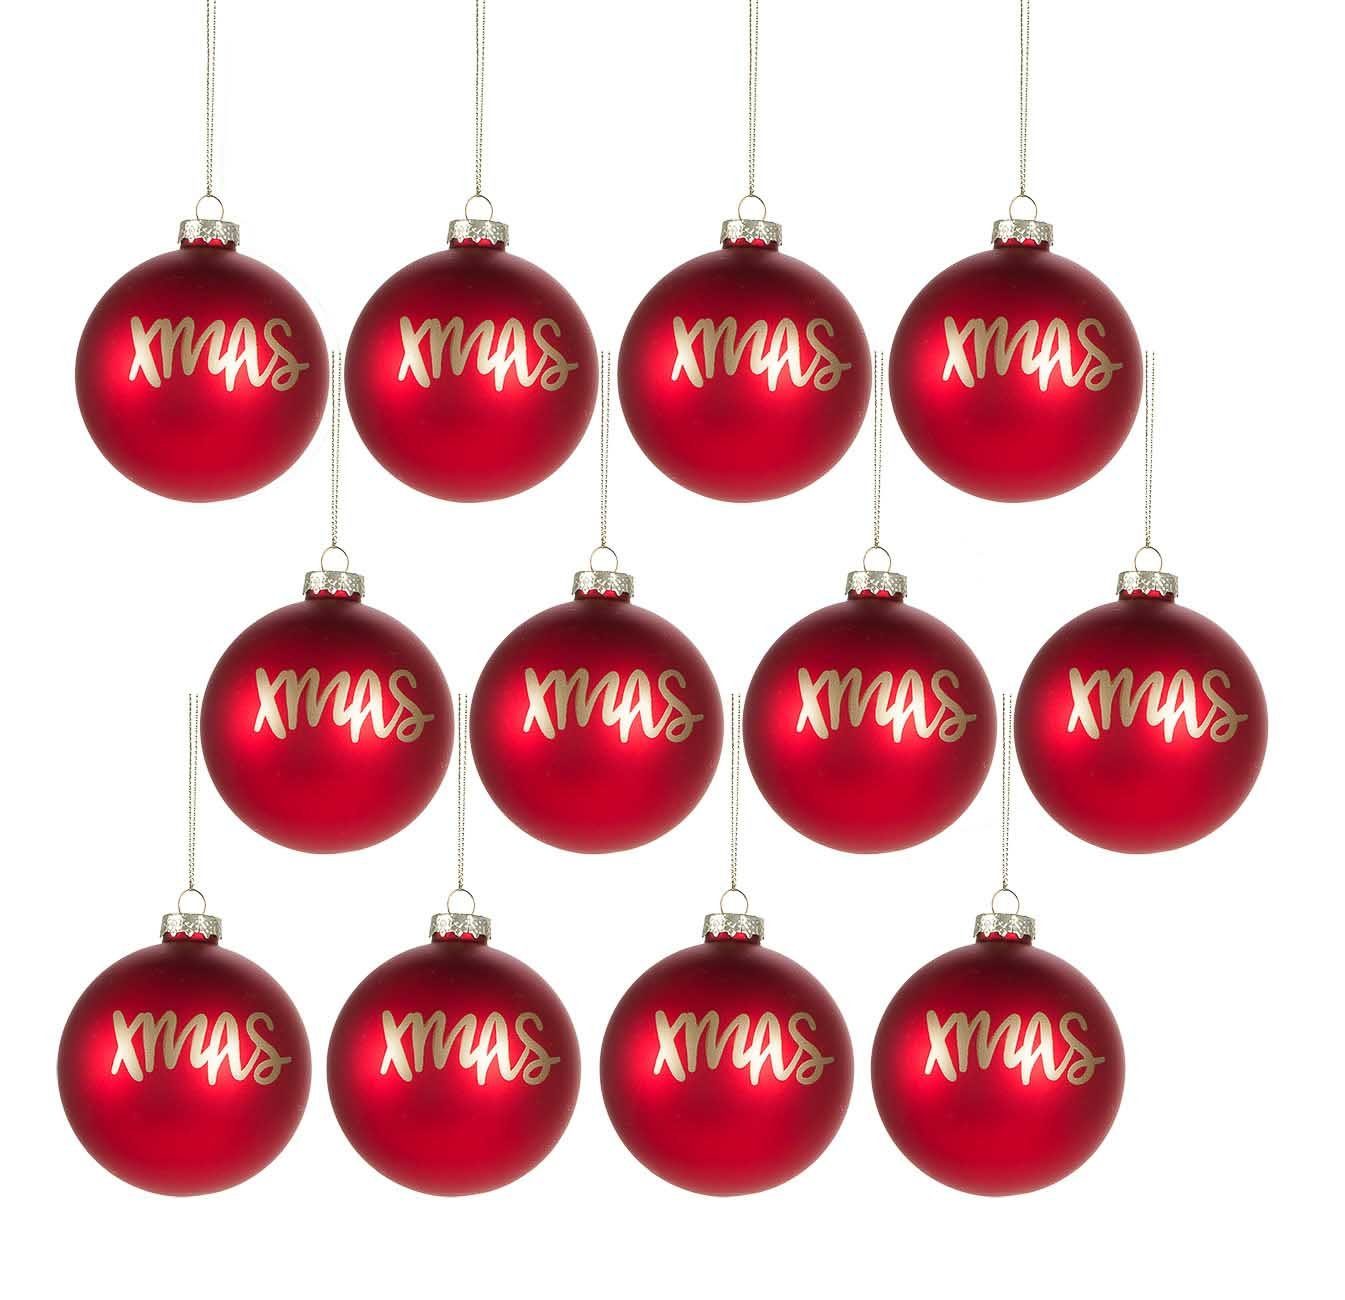 Bubble-Store Weihnachtsbaumkugel Echtglas, 12 Weihnachtskugeln mit Xmas-Schriftzug